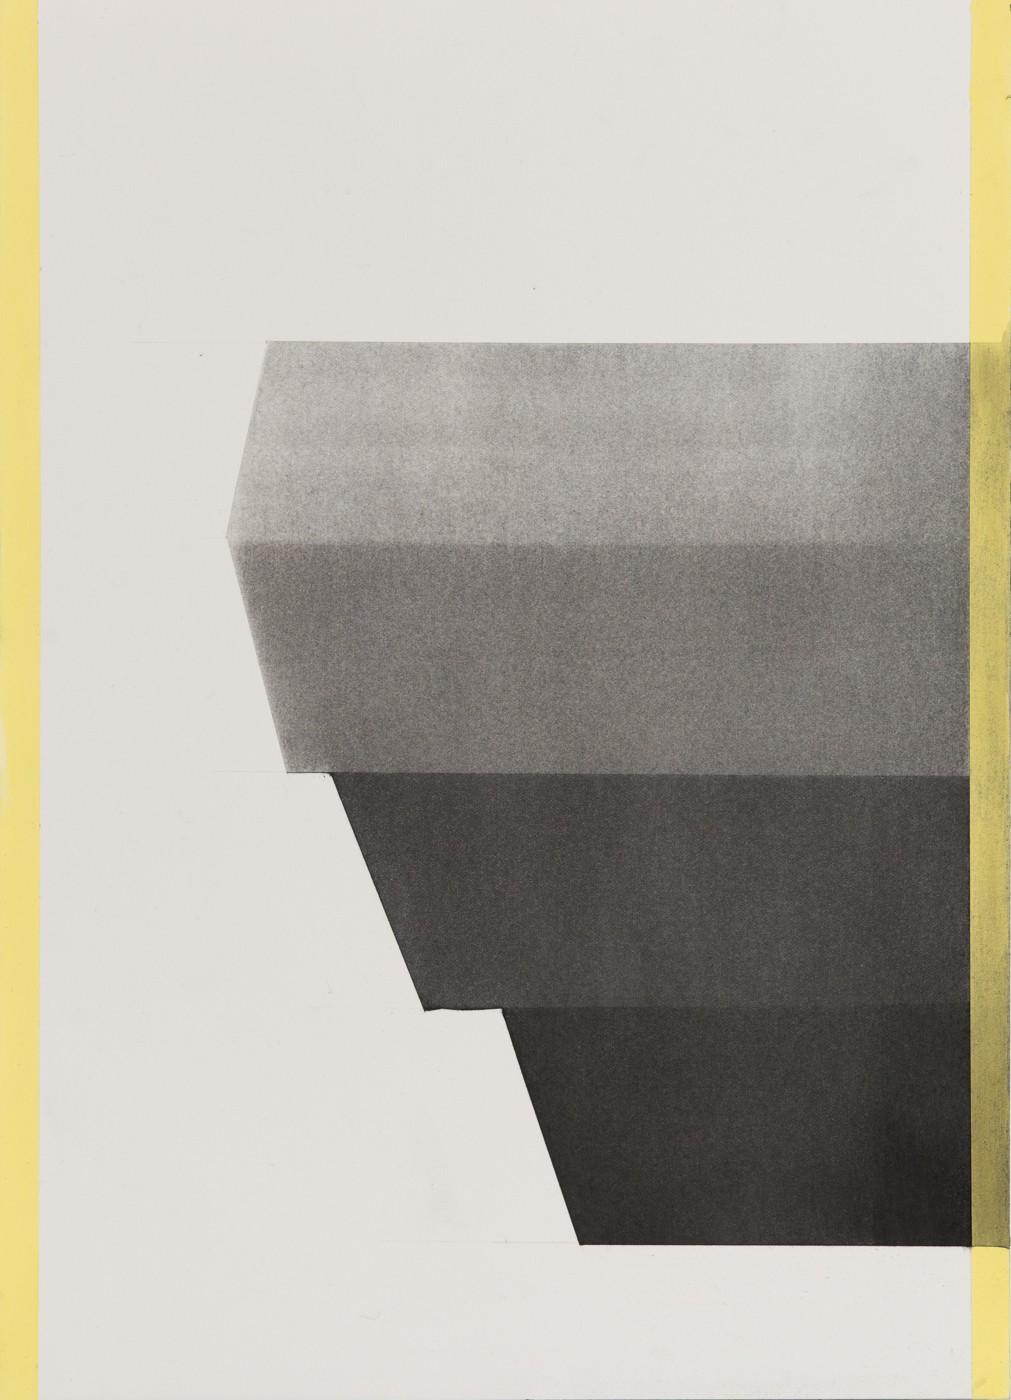 Notes on Architecture, Rakenne/Structure (2014) — Minna Hannele Lappalainen